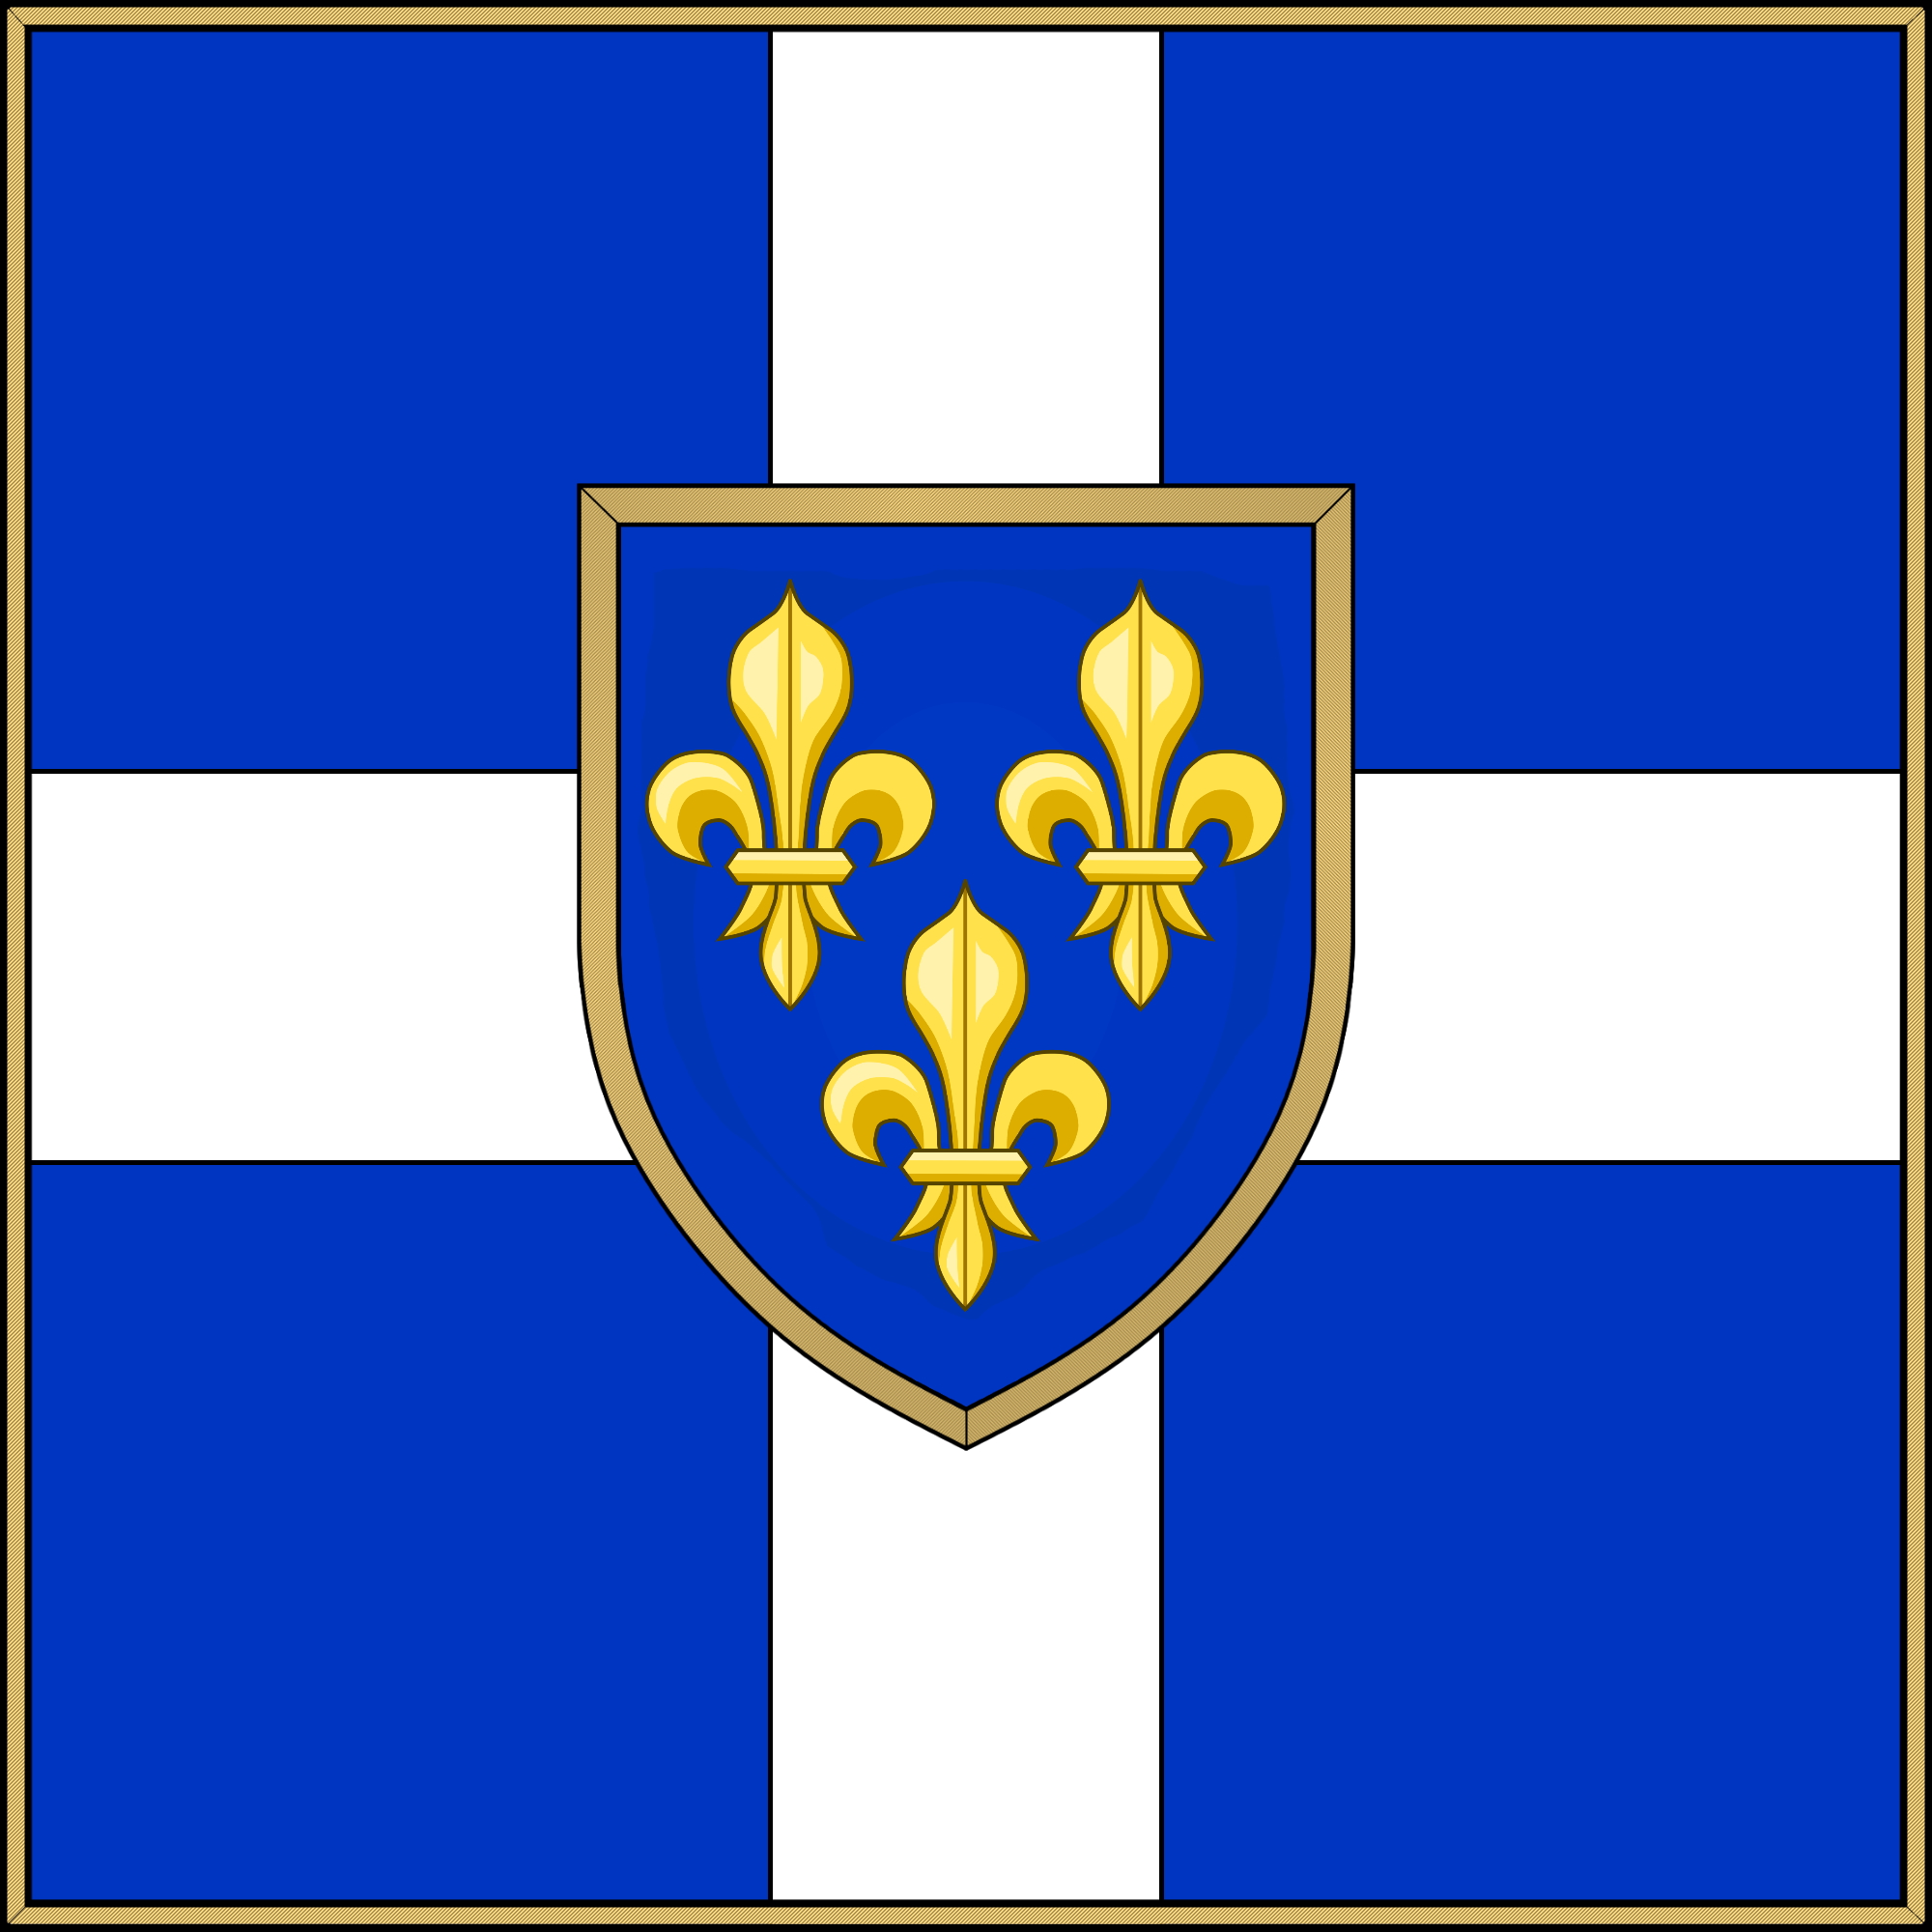 Боевое знамя Квебекского батальона